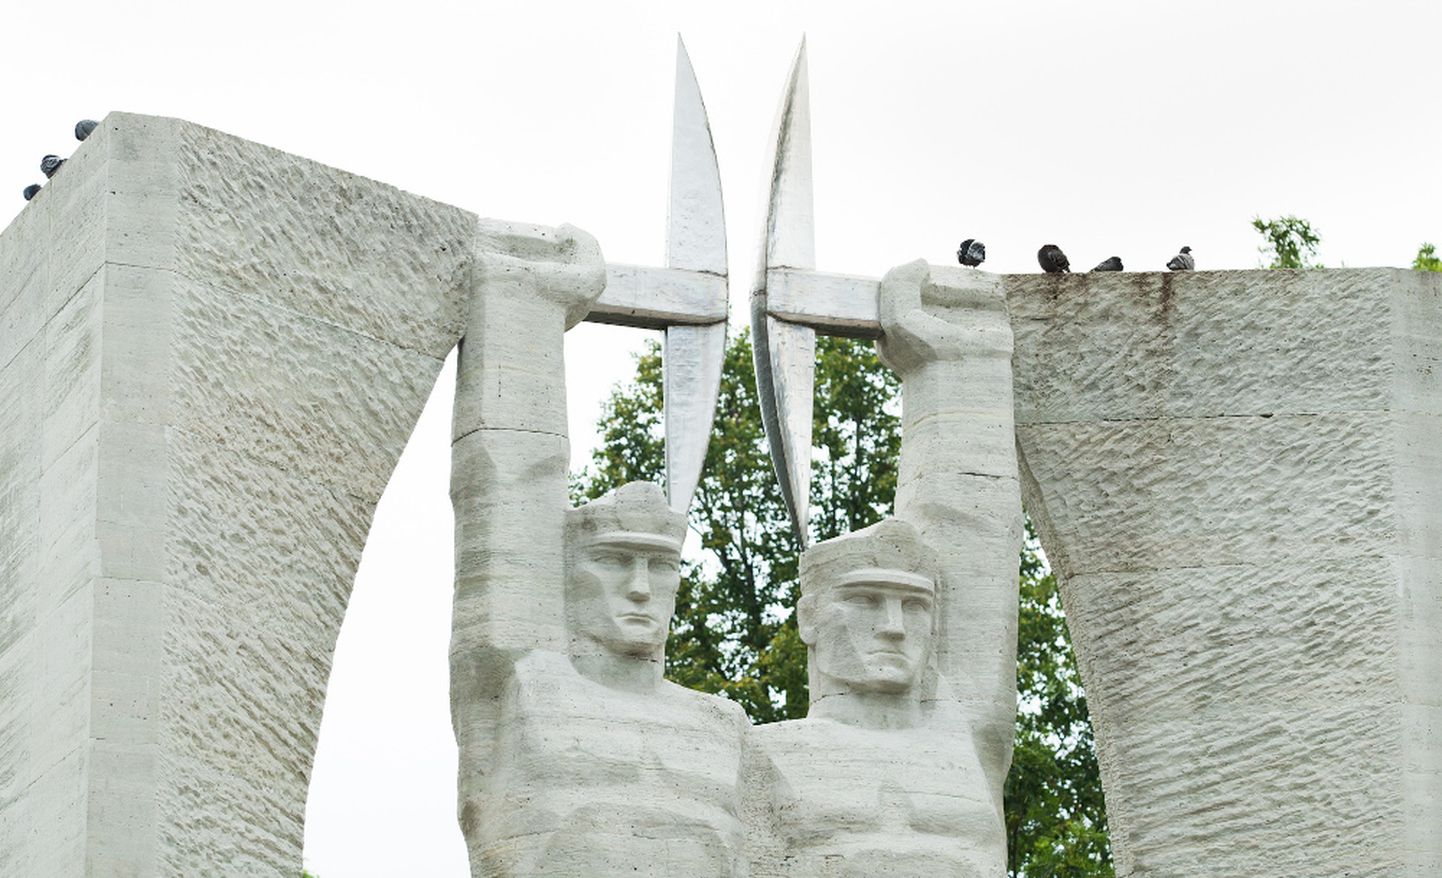 Hiljemalt 22. veebruaril seatakse Eesti juubelipidustusteks valmis monumendi "Au tööle" kaks kaevurit Kohtla-Järve keskväljakul.
MATTI KÄMÄRÄ